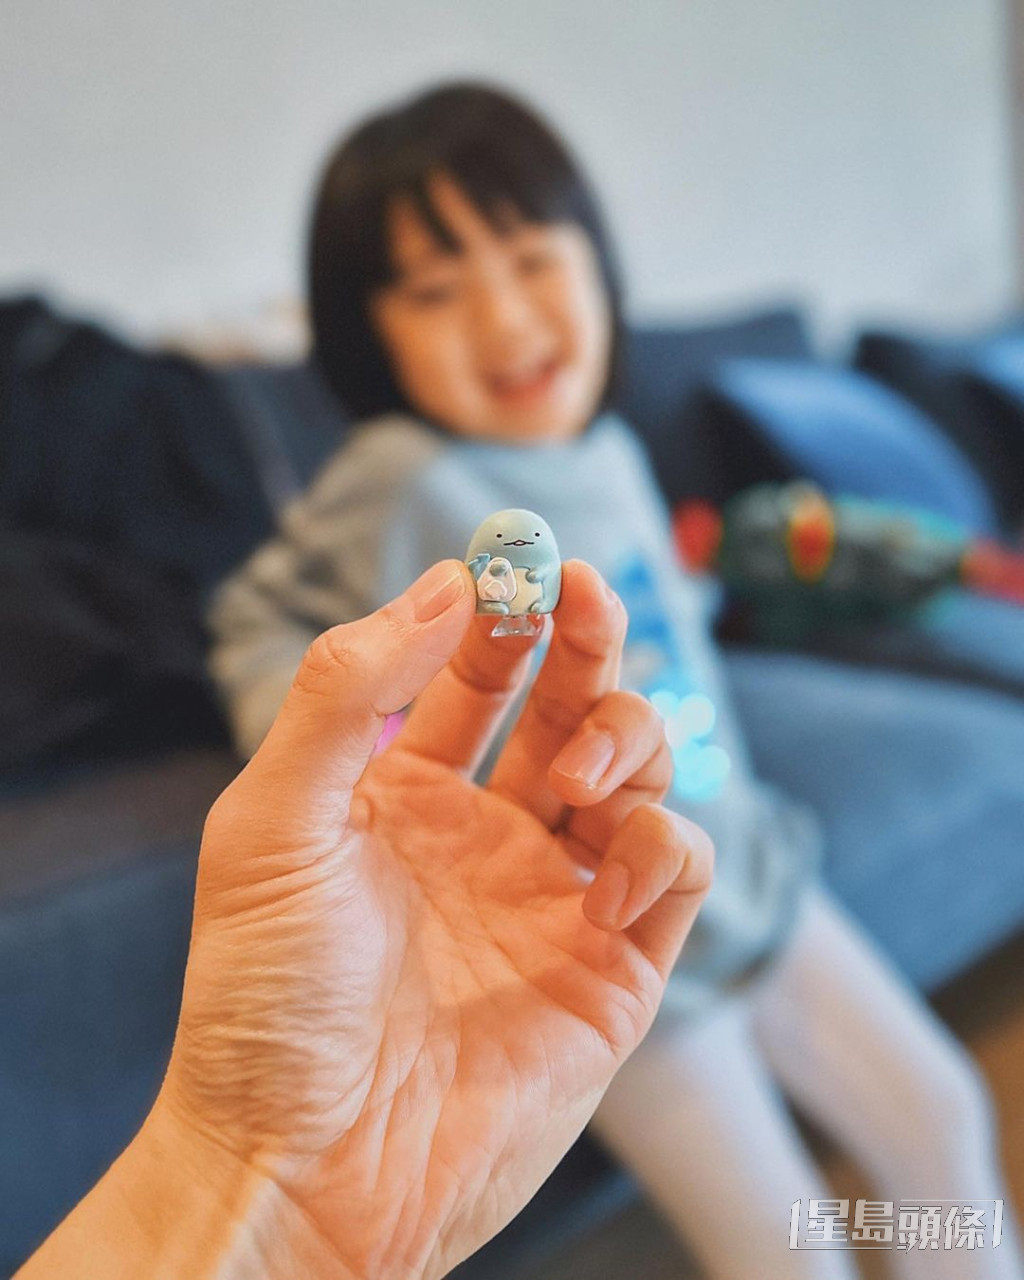 周柏豪分享愛女與玩具的合照，網民大讚囡囡可愛。